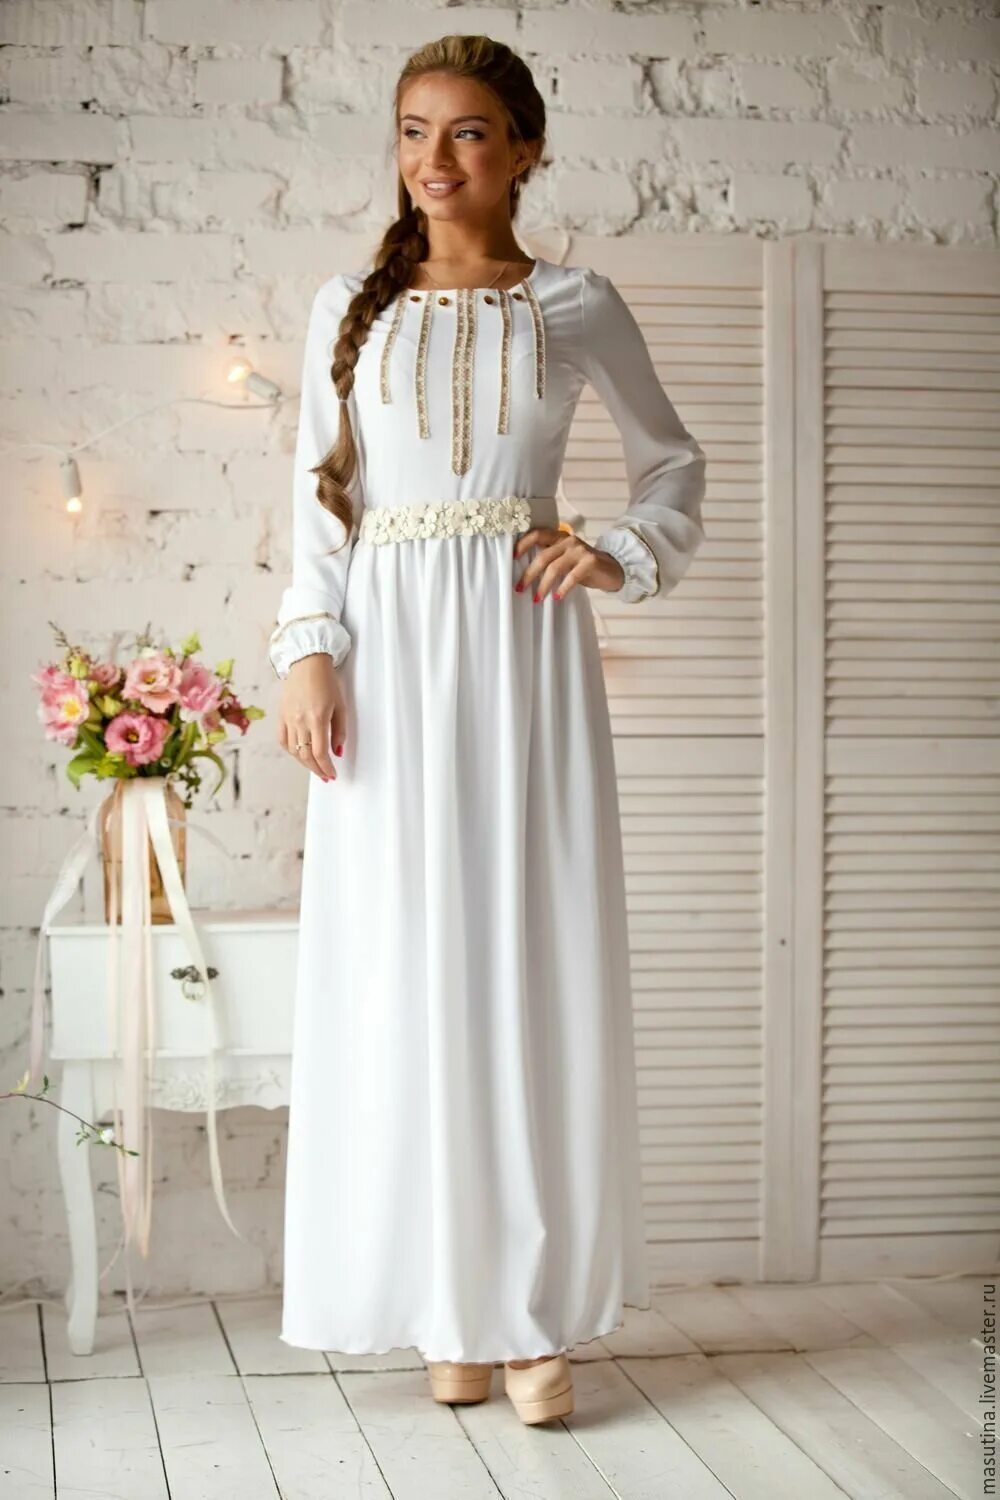 Венчальное платье. Платье в Славянском стиле. Белое длинное платье. Платье для церкви. Православные платья интернет